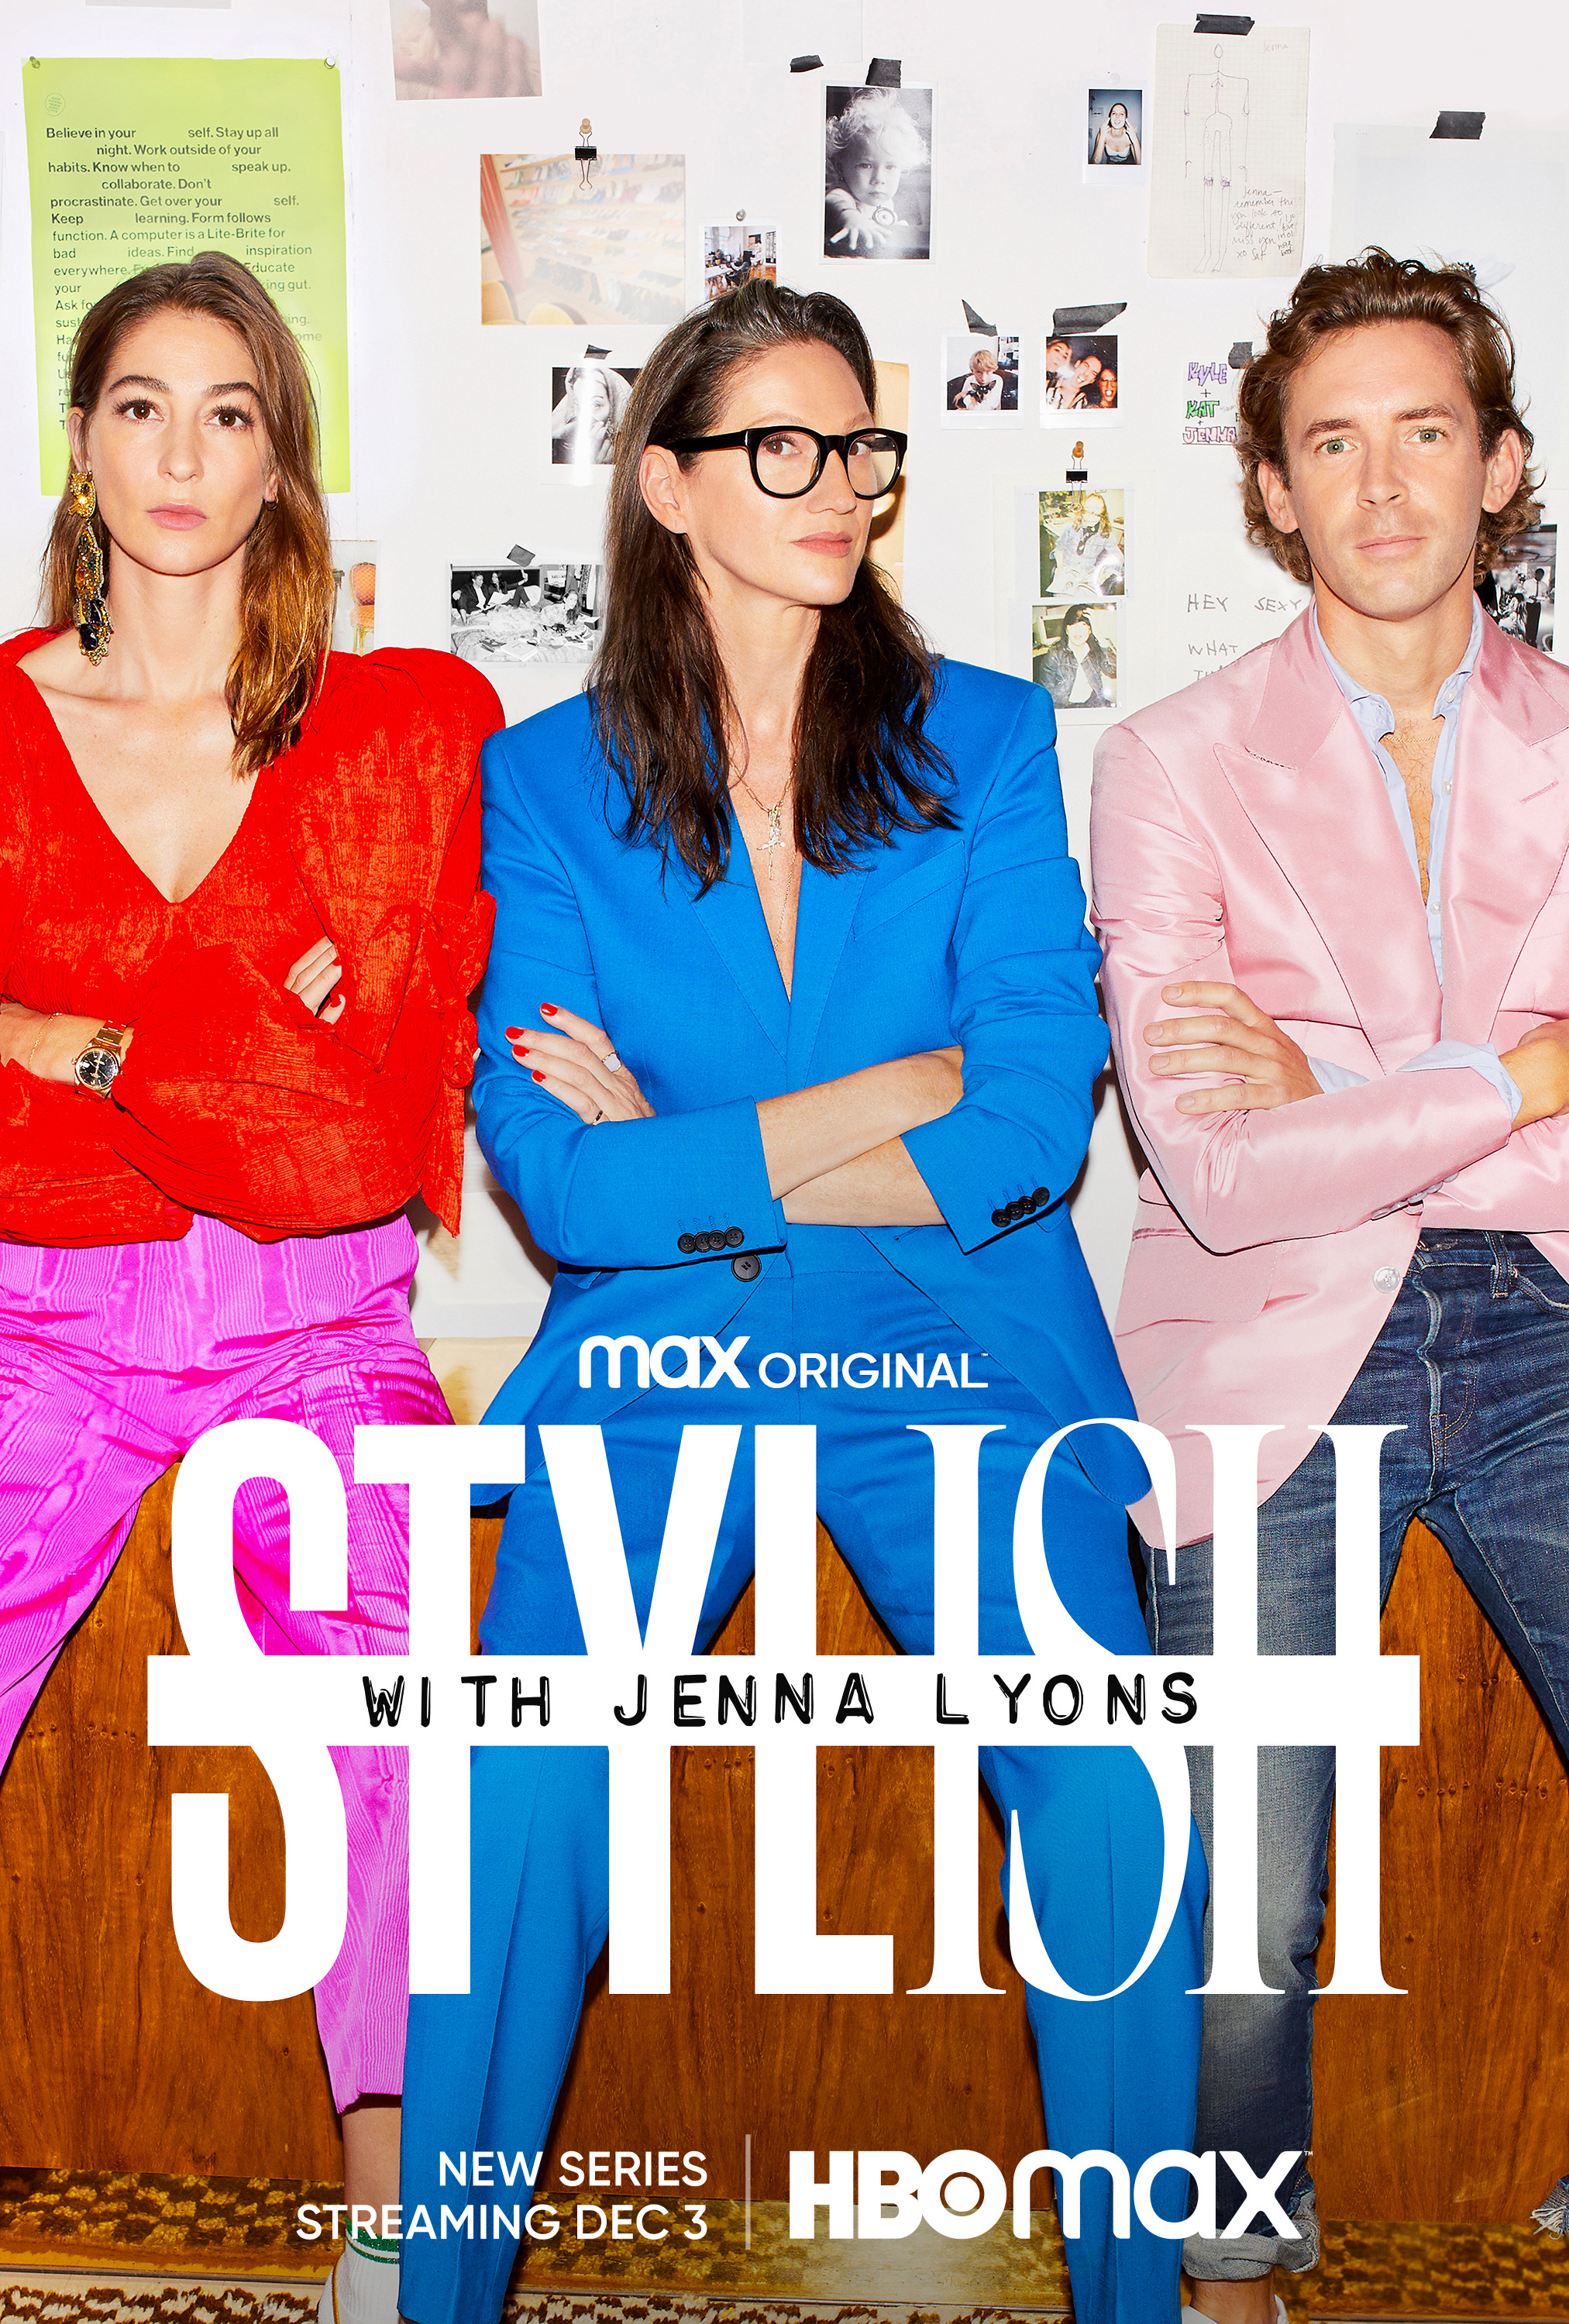 Mega Sized TV Poster Image for Stylish with Jenna Lyons 